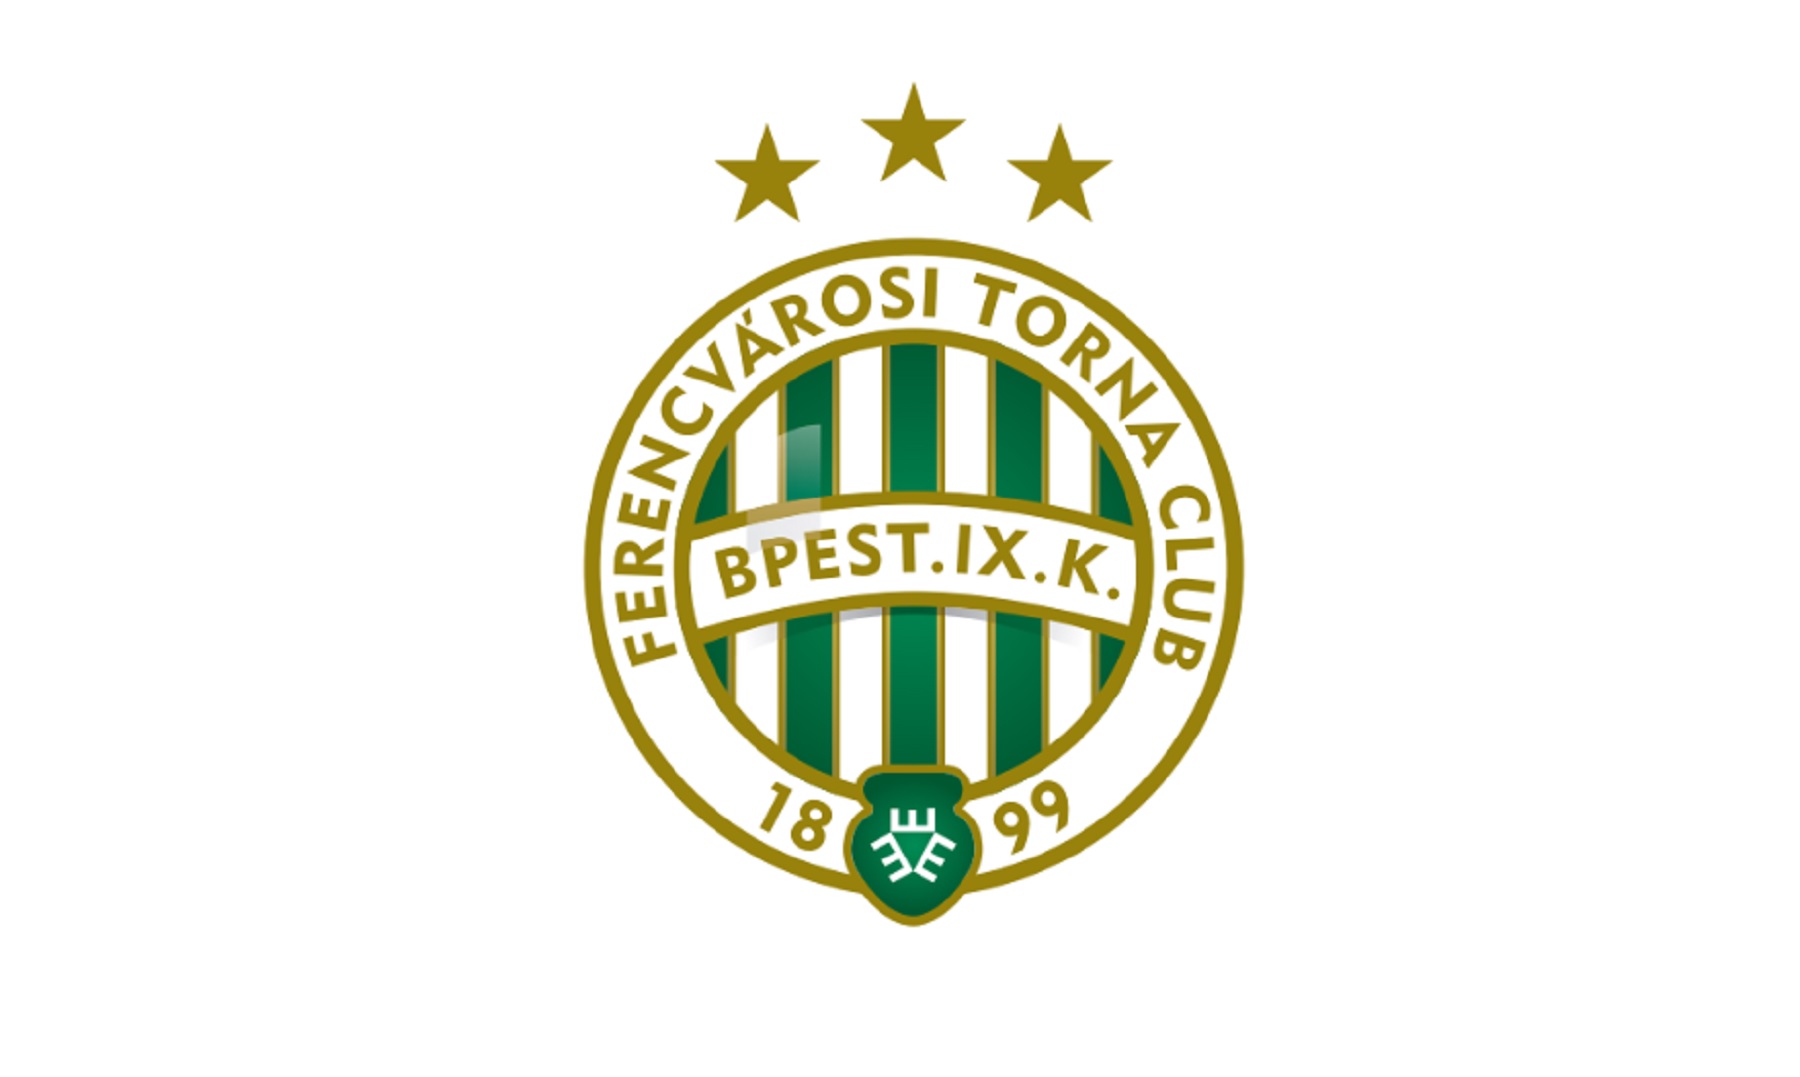 MOL Fehérvár FC-Ferencvárosi TC 2-2 - Hír TV